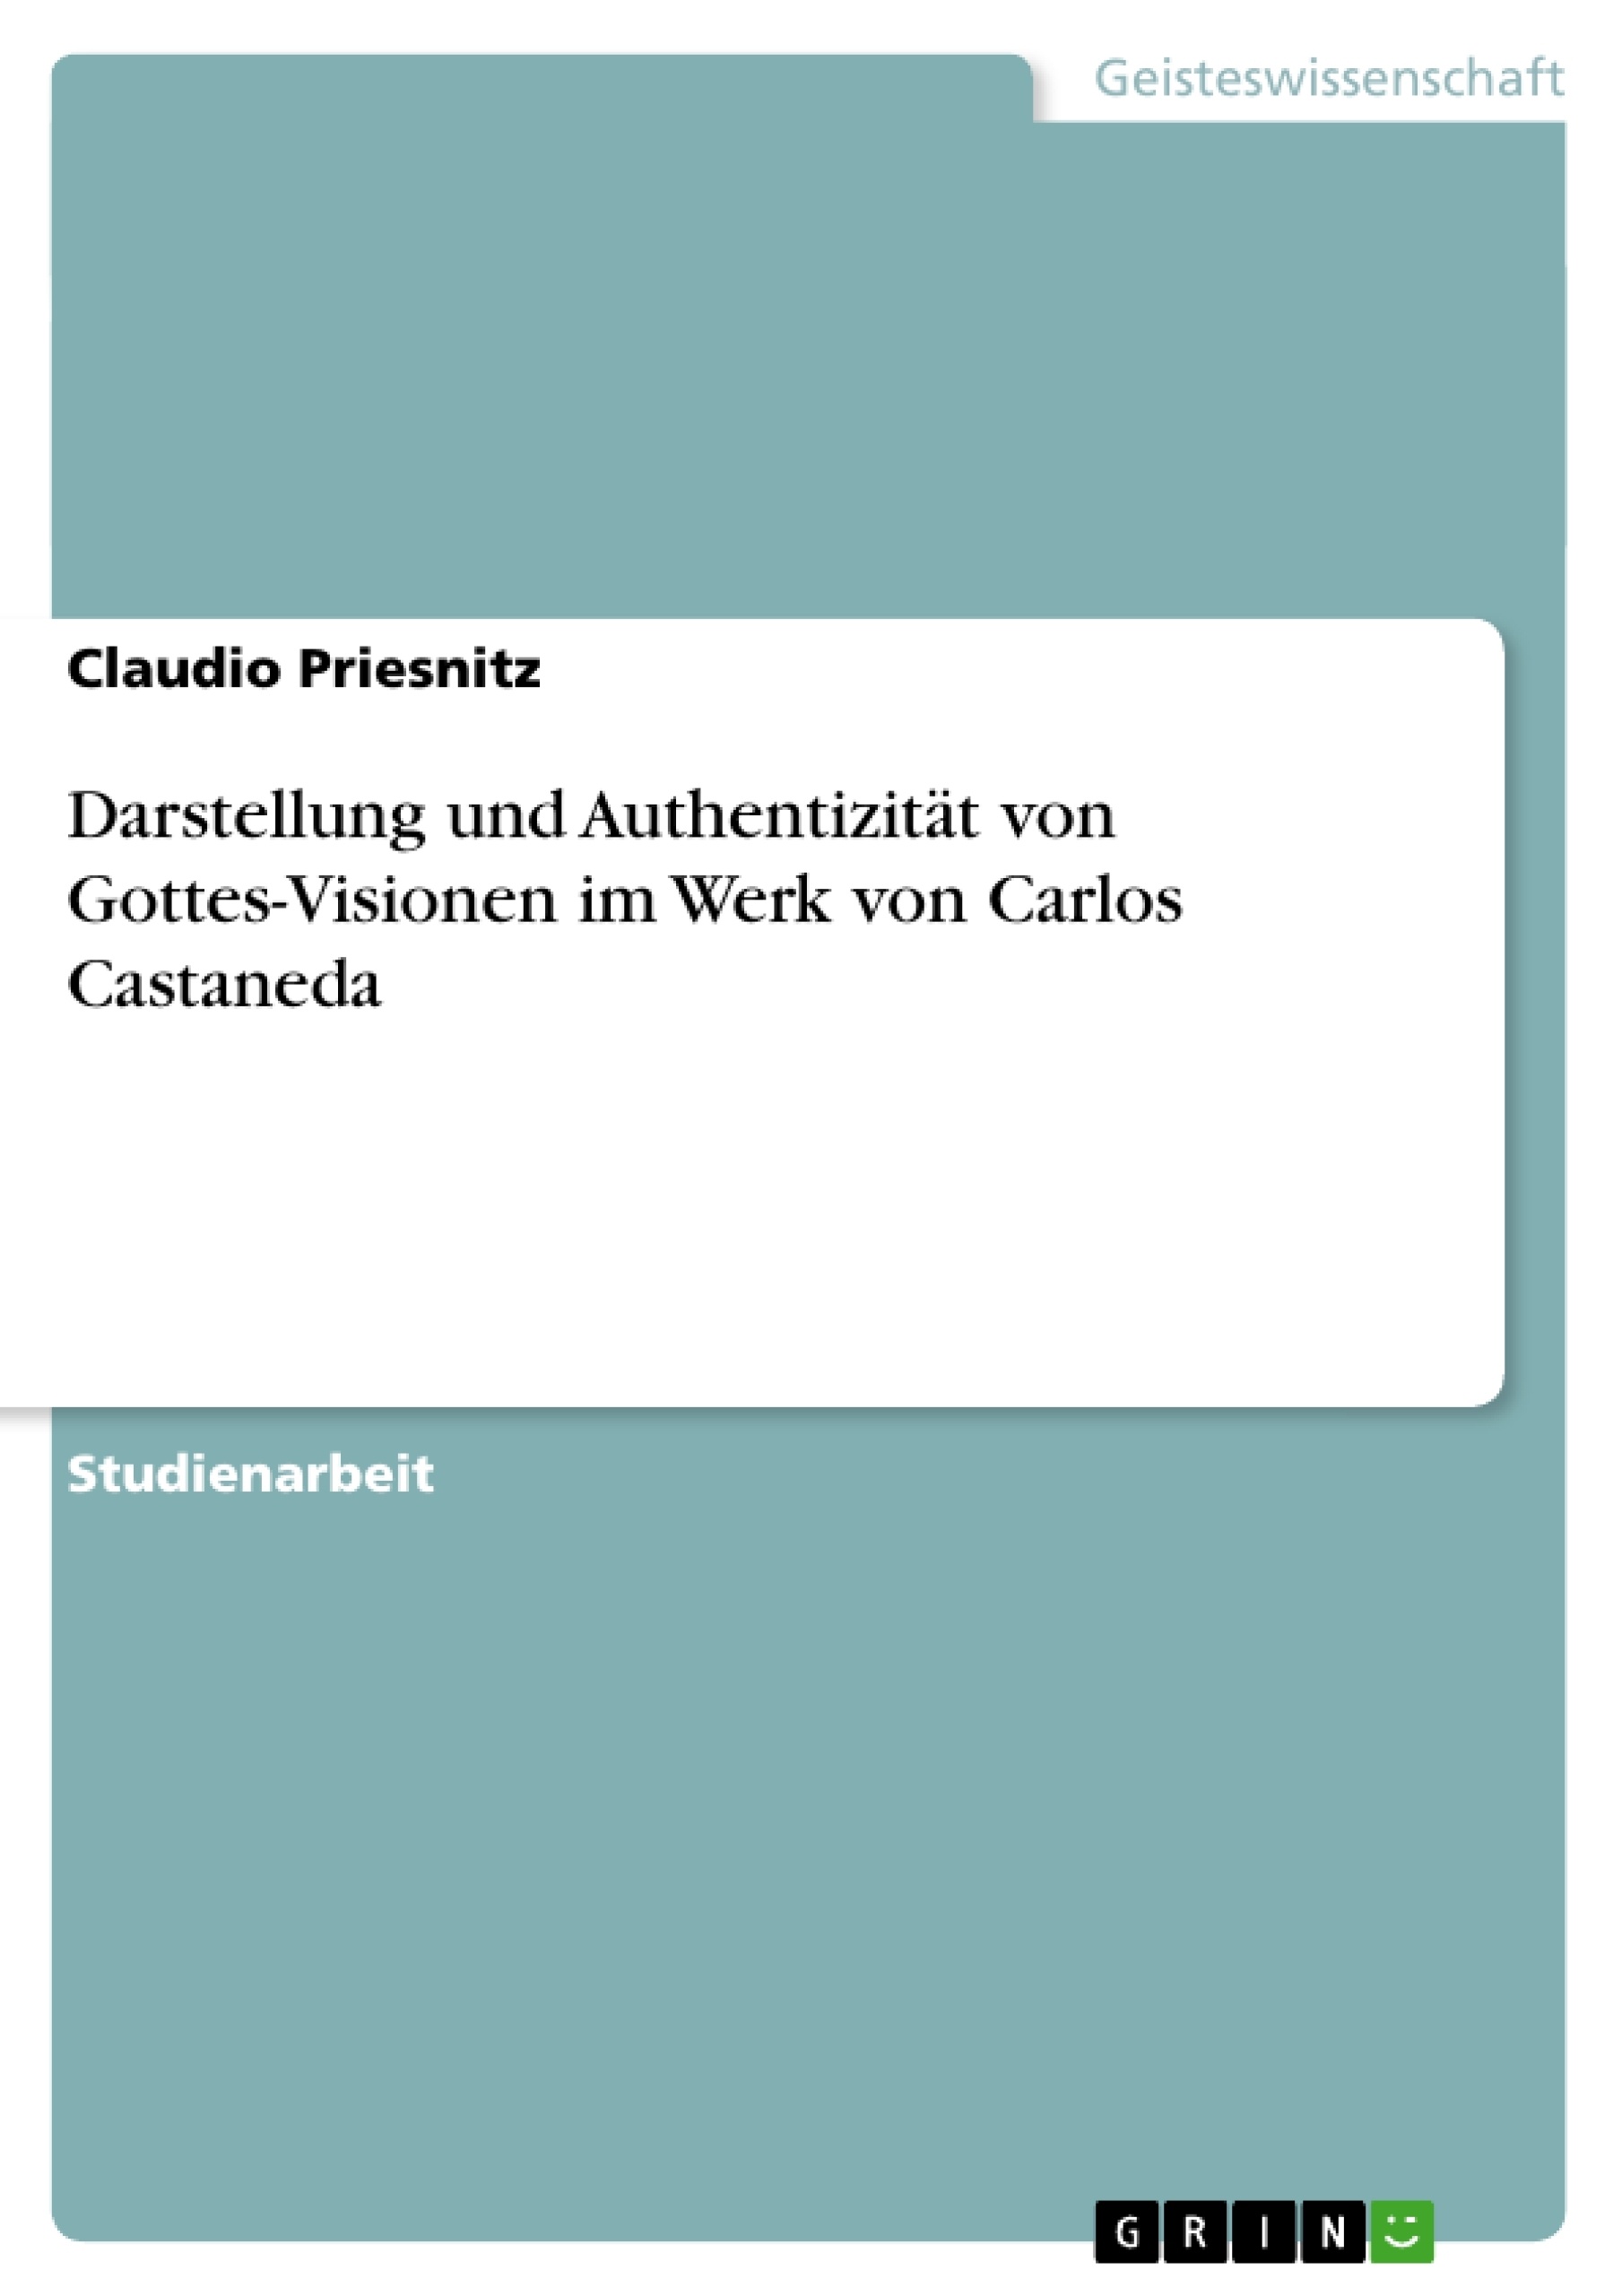 Title: Darstellung und Authentizität von Gottes-Visionen im Werk von Carlos Castaneda